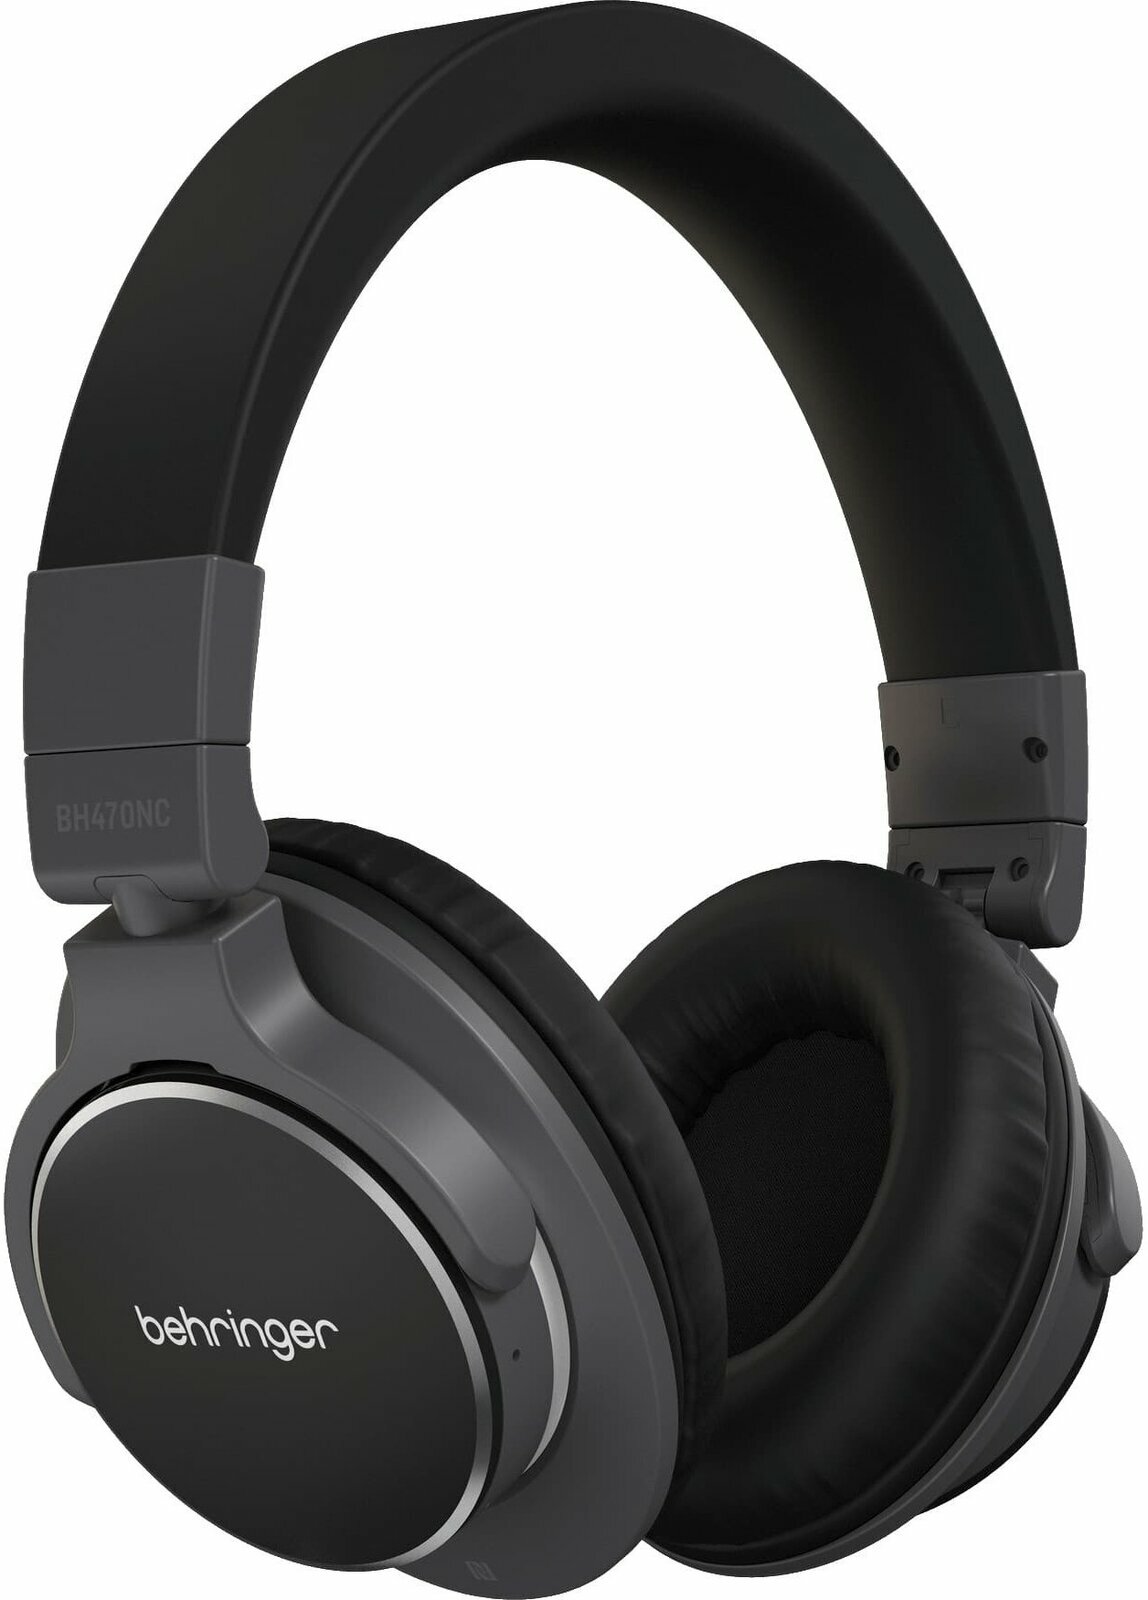 Trådløse on-ear hovedtelefoner Behringer BH470NC Black